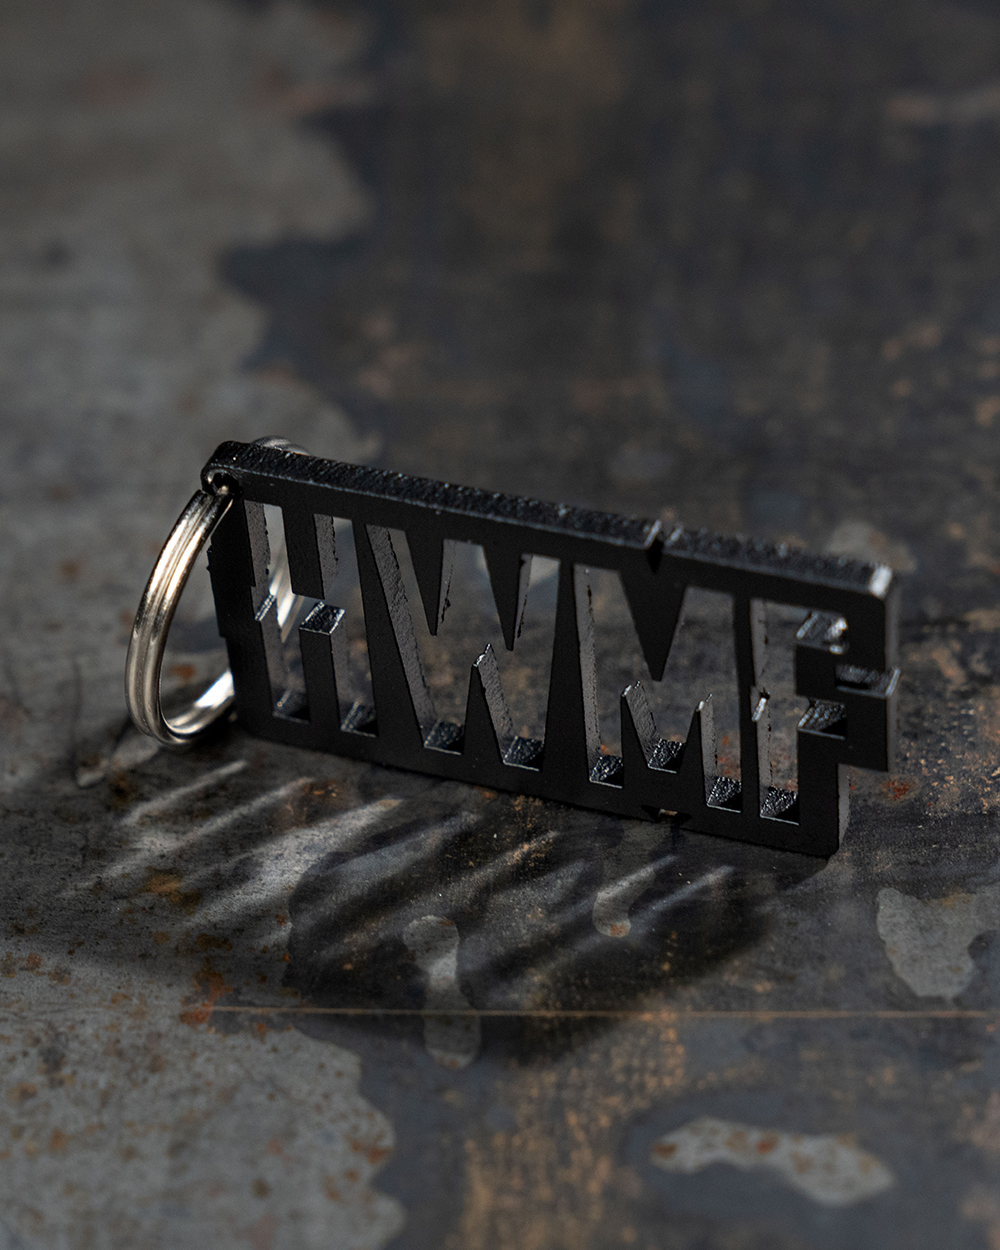 HWMF Keychain